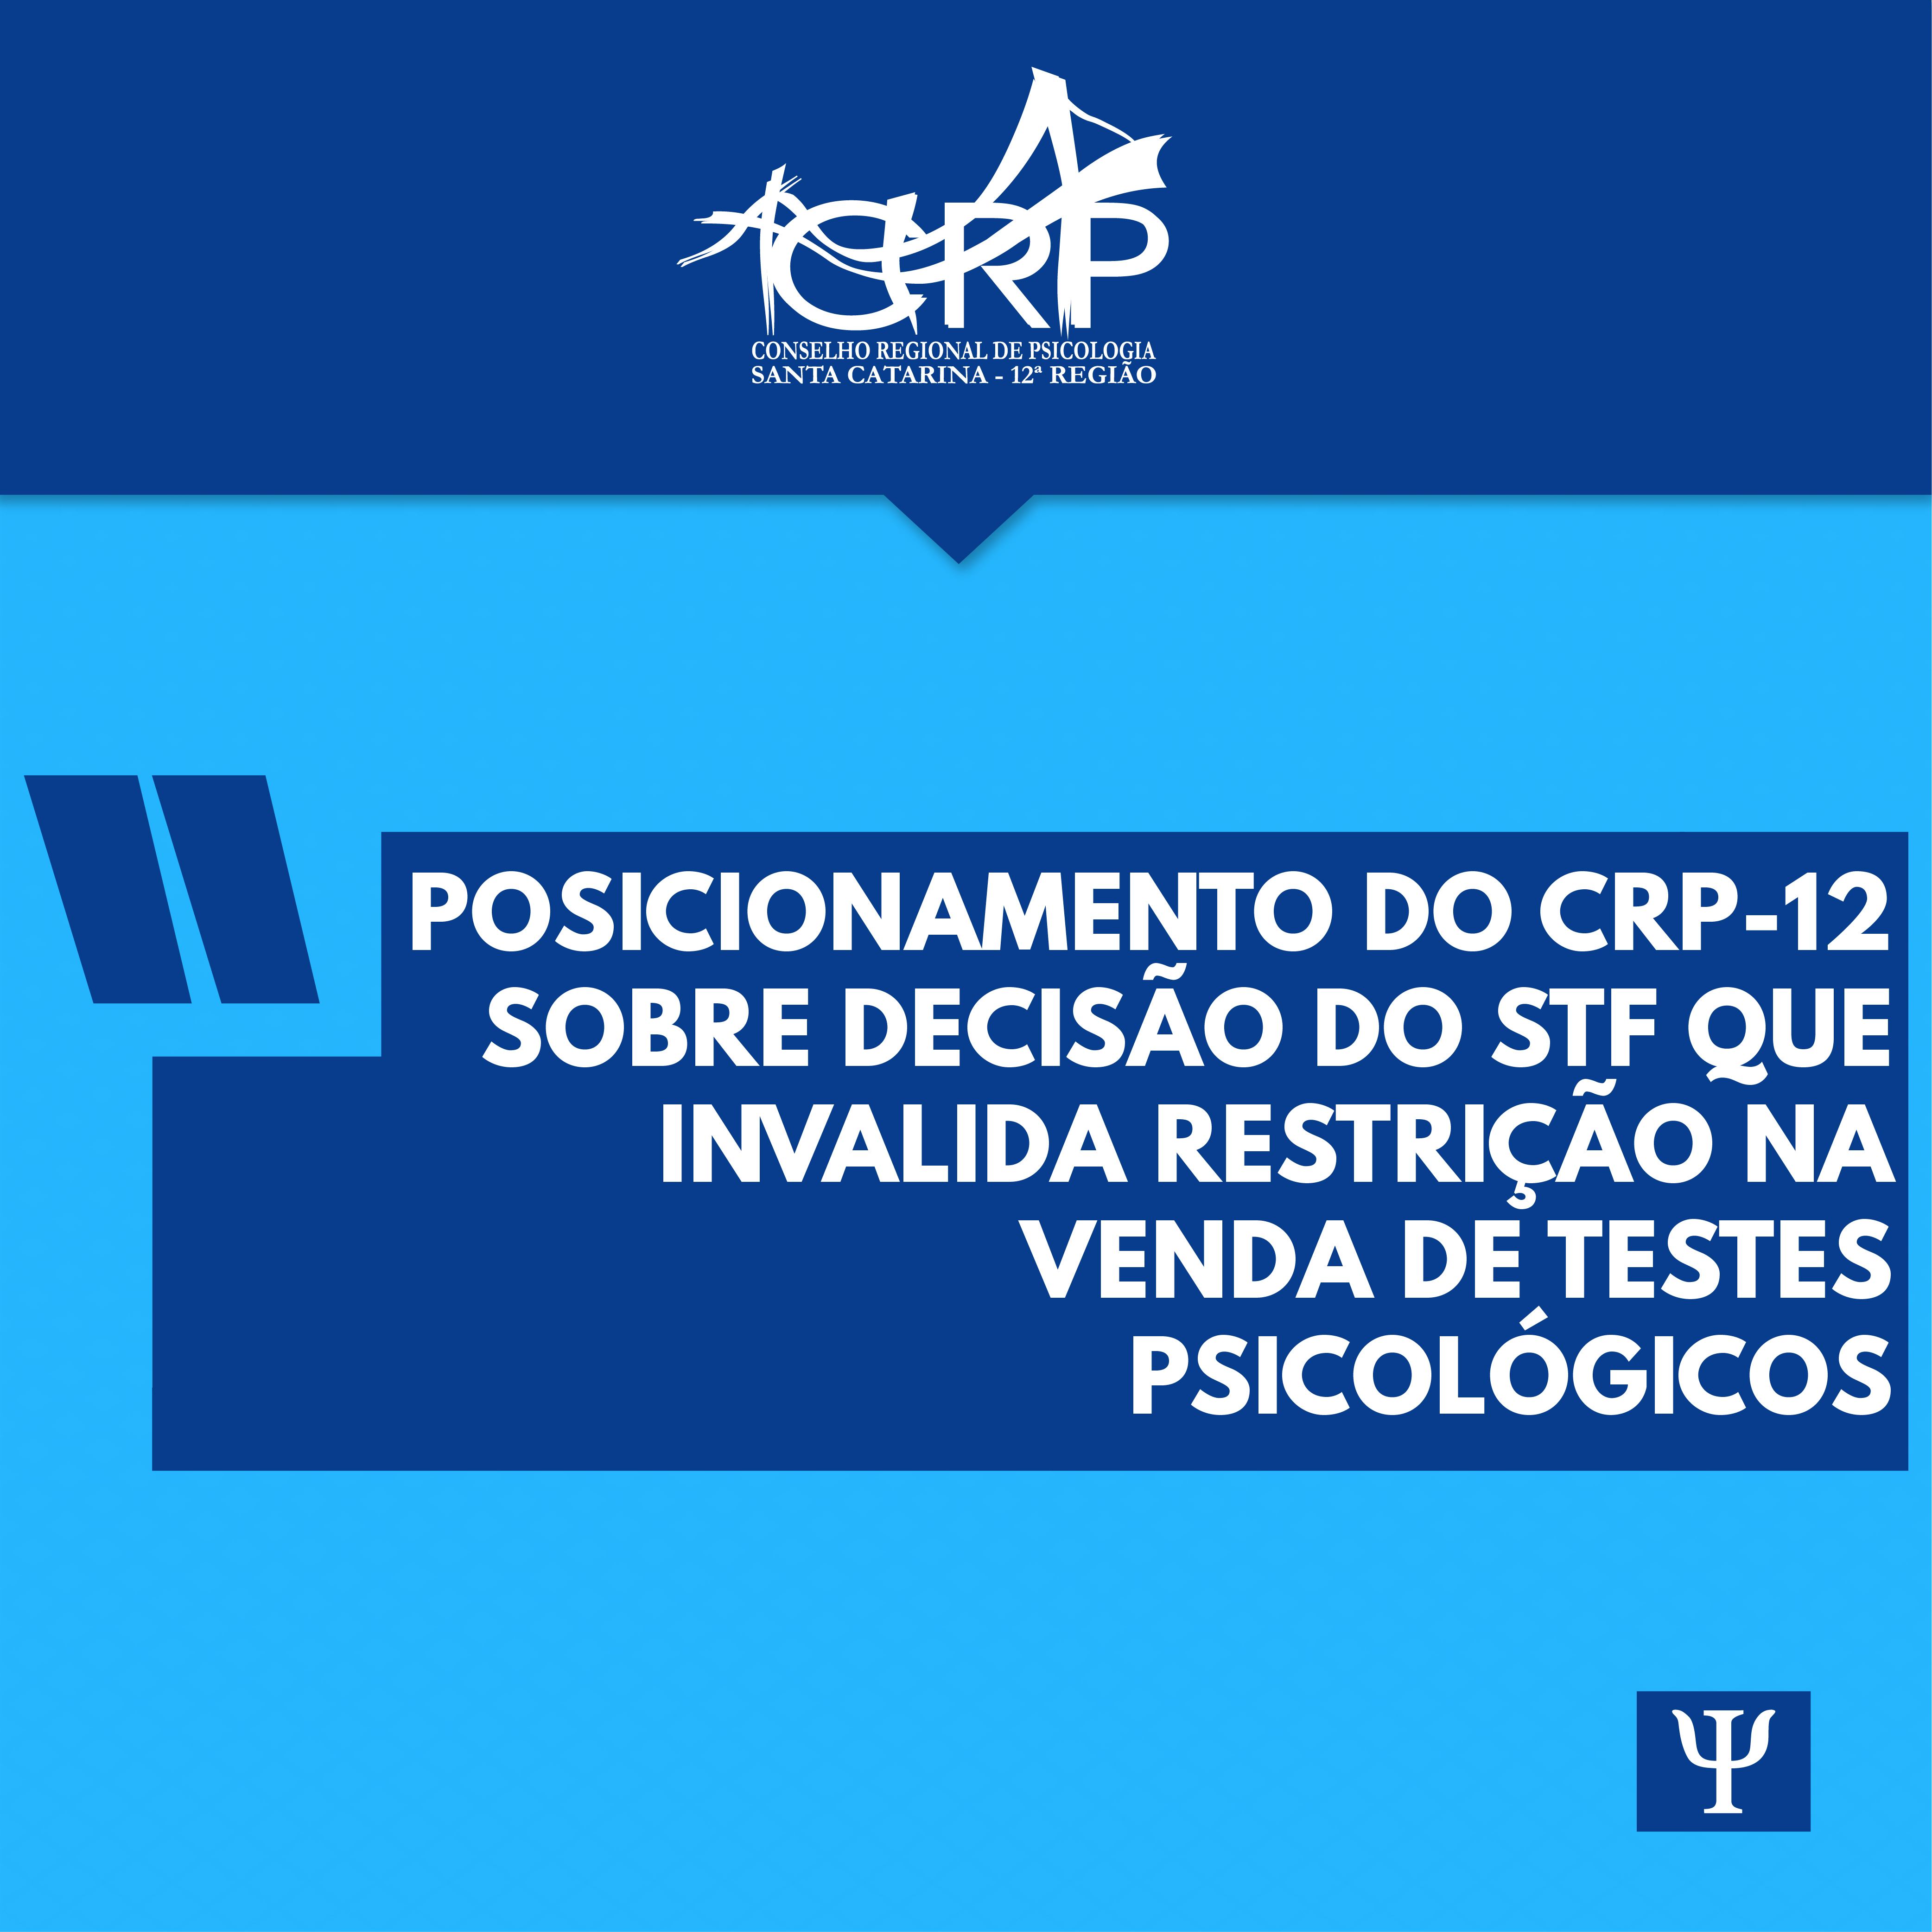 Posicionamento do CRP-12 sobre decisão do STF que invalida restrição na venda de testes psicológicos